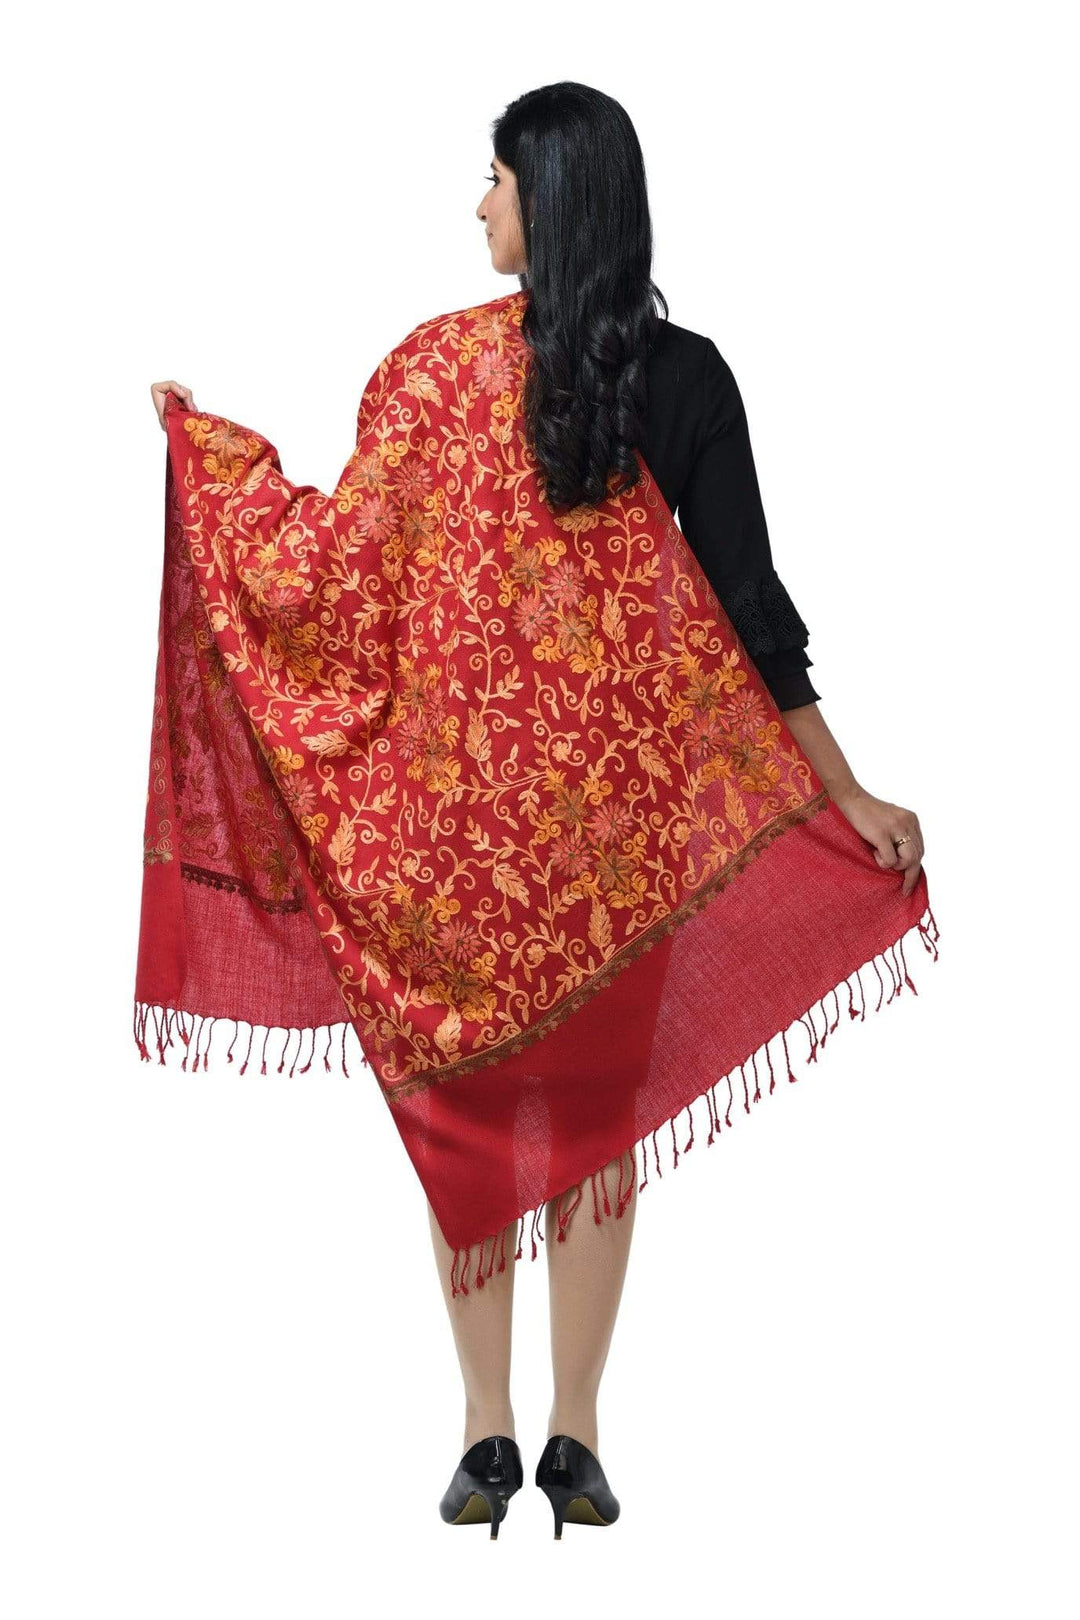 Pashwool 70x200 Pashwool Womens Kashmiri Embroidery Woollen Stole, Soft and Warm, Maroon